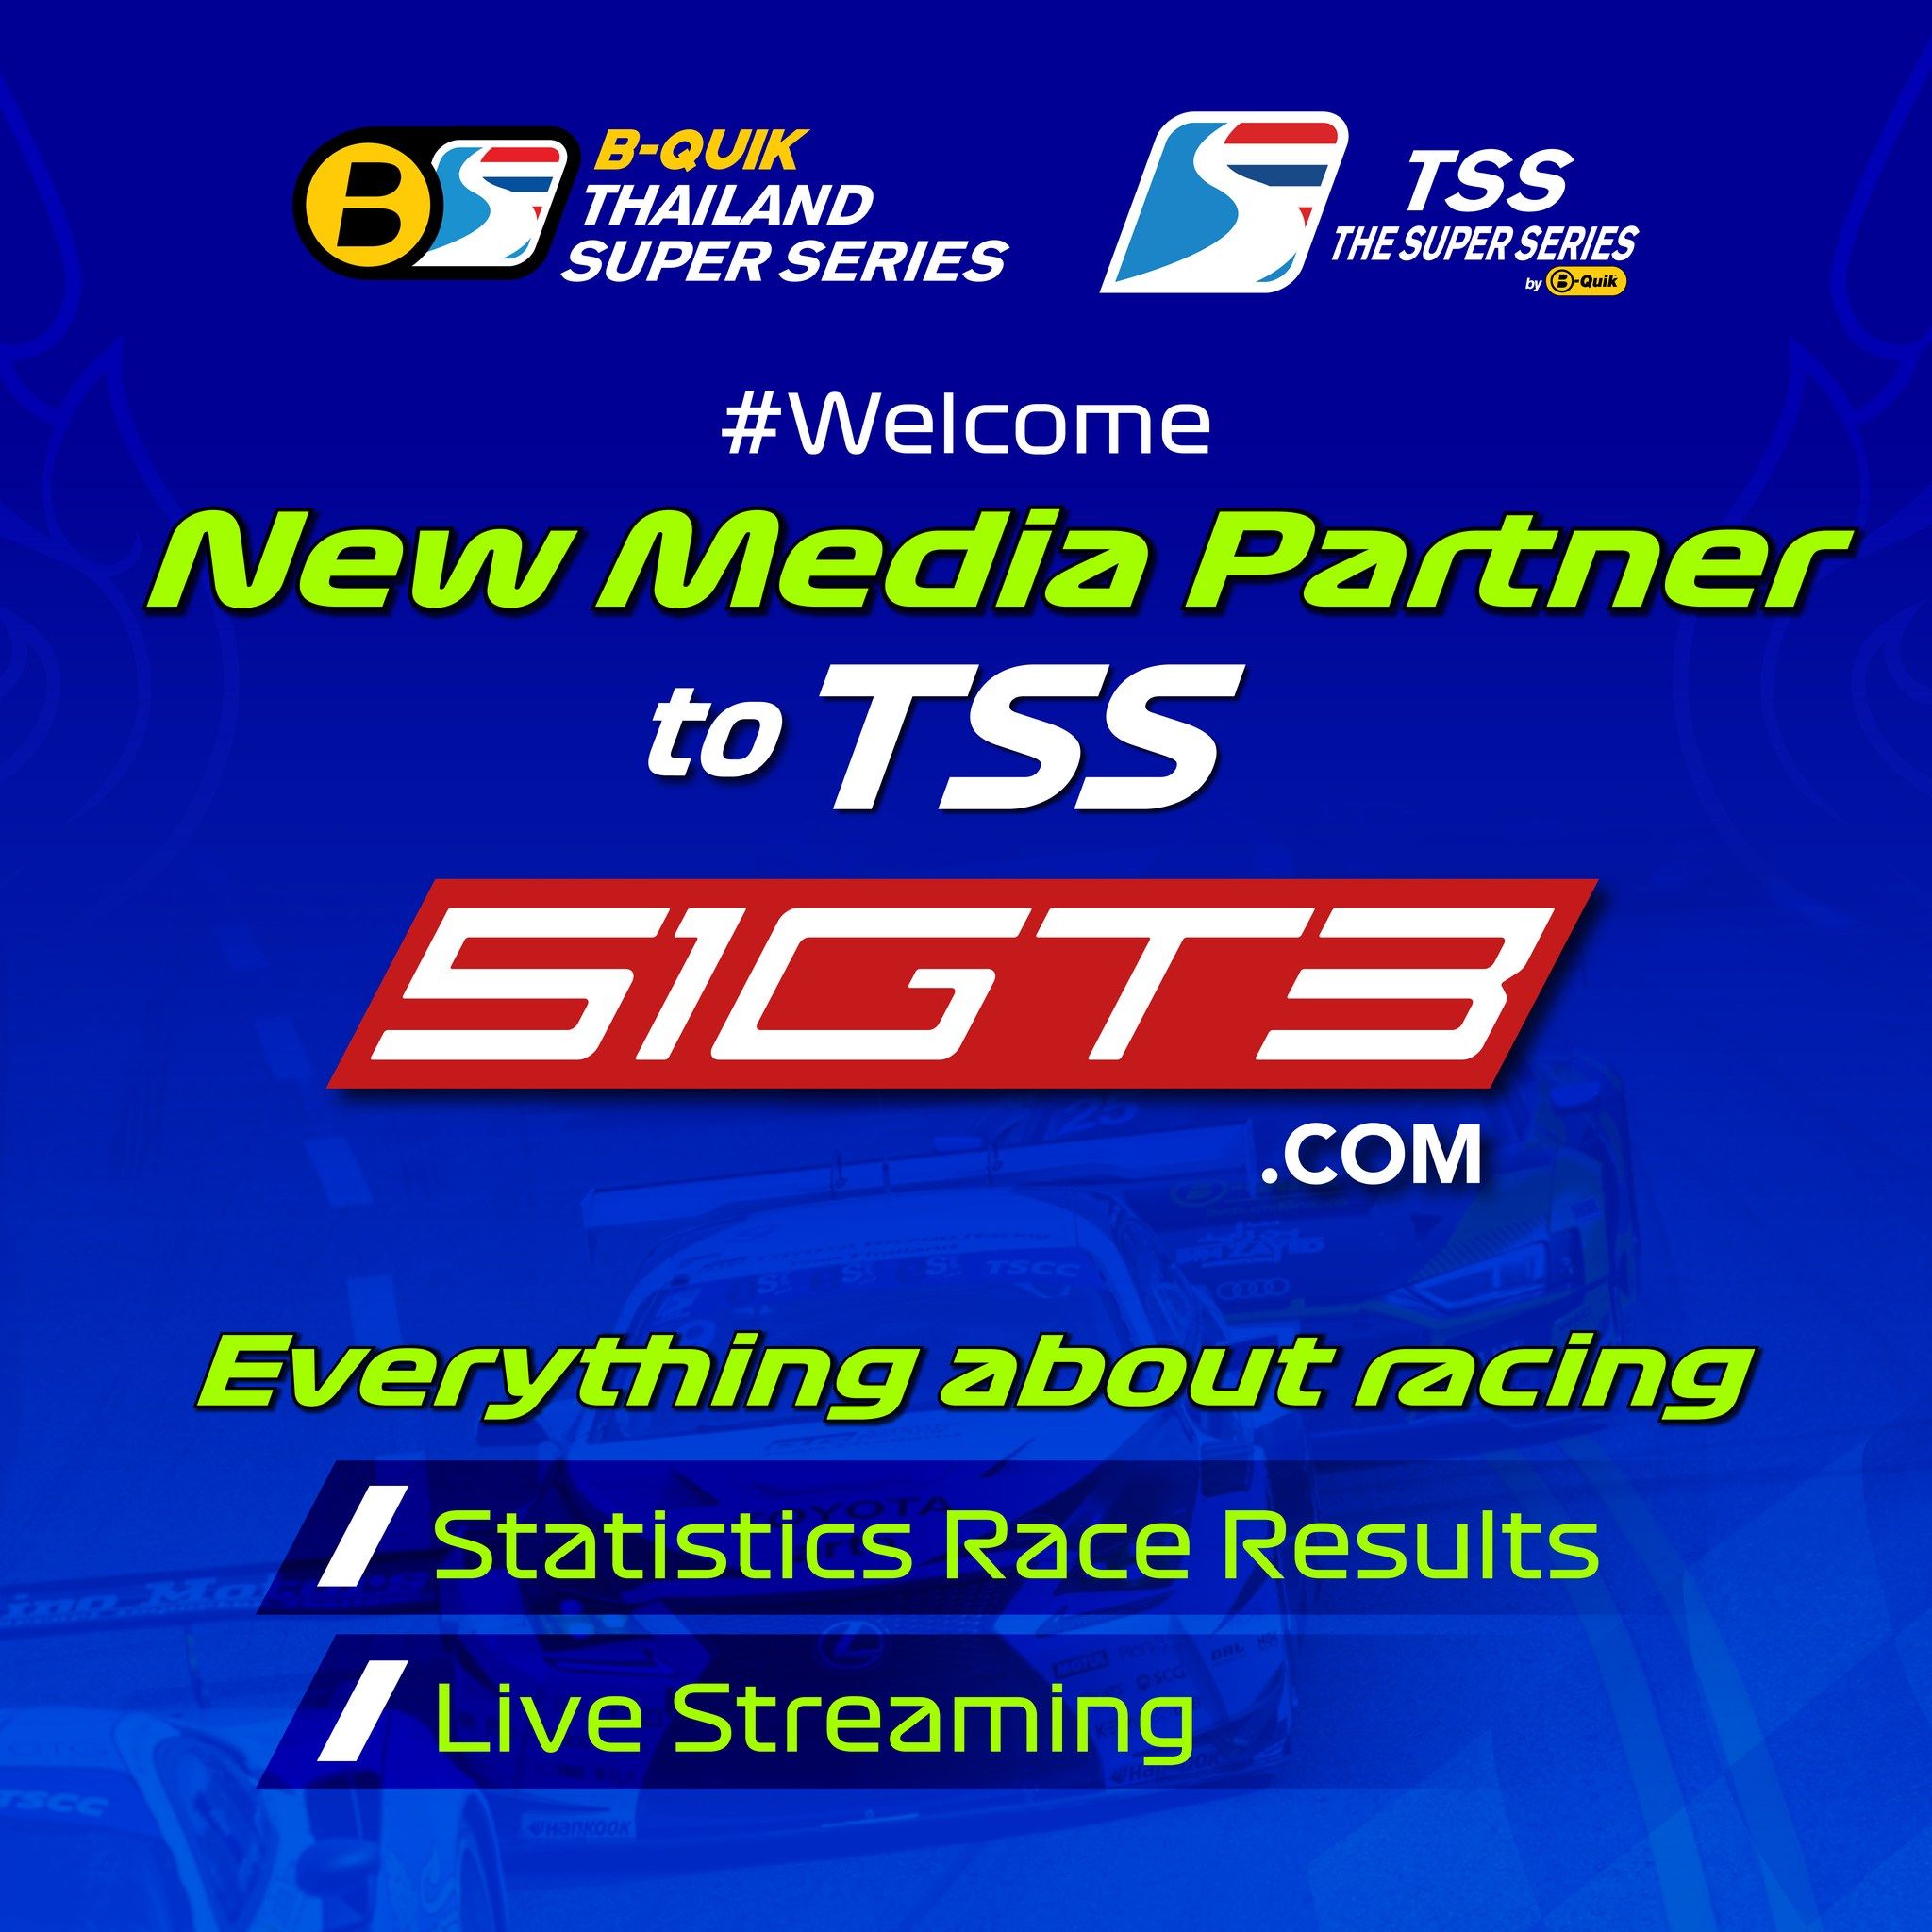 歡迎新媒體合作夥伴加入TSS - 51GT3.com